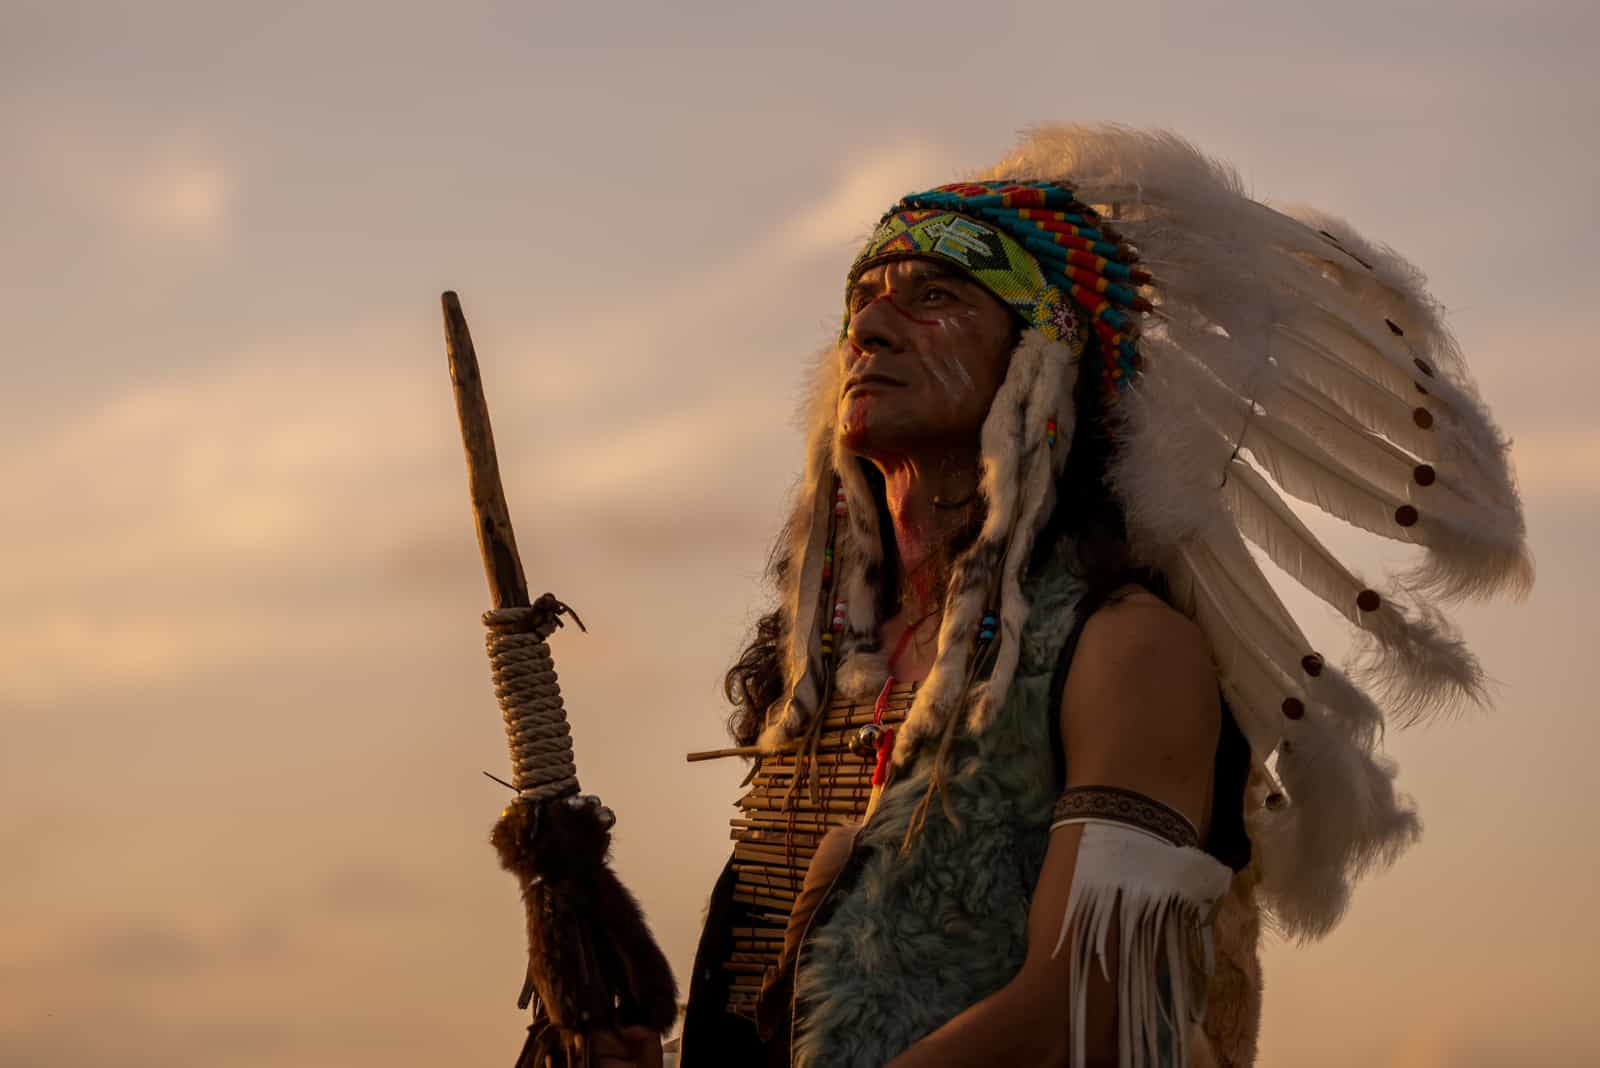 Weisheiten der indigenen Völker Amerikas: Inspirierende Sprüche